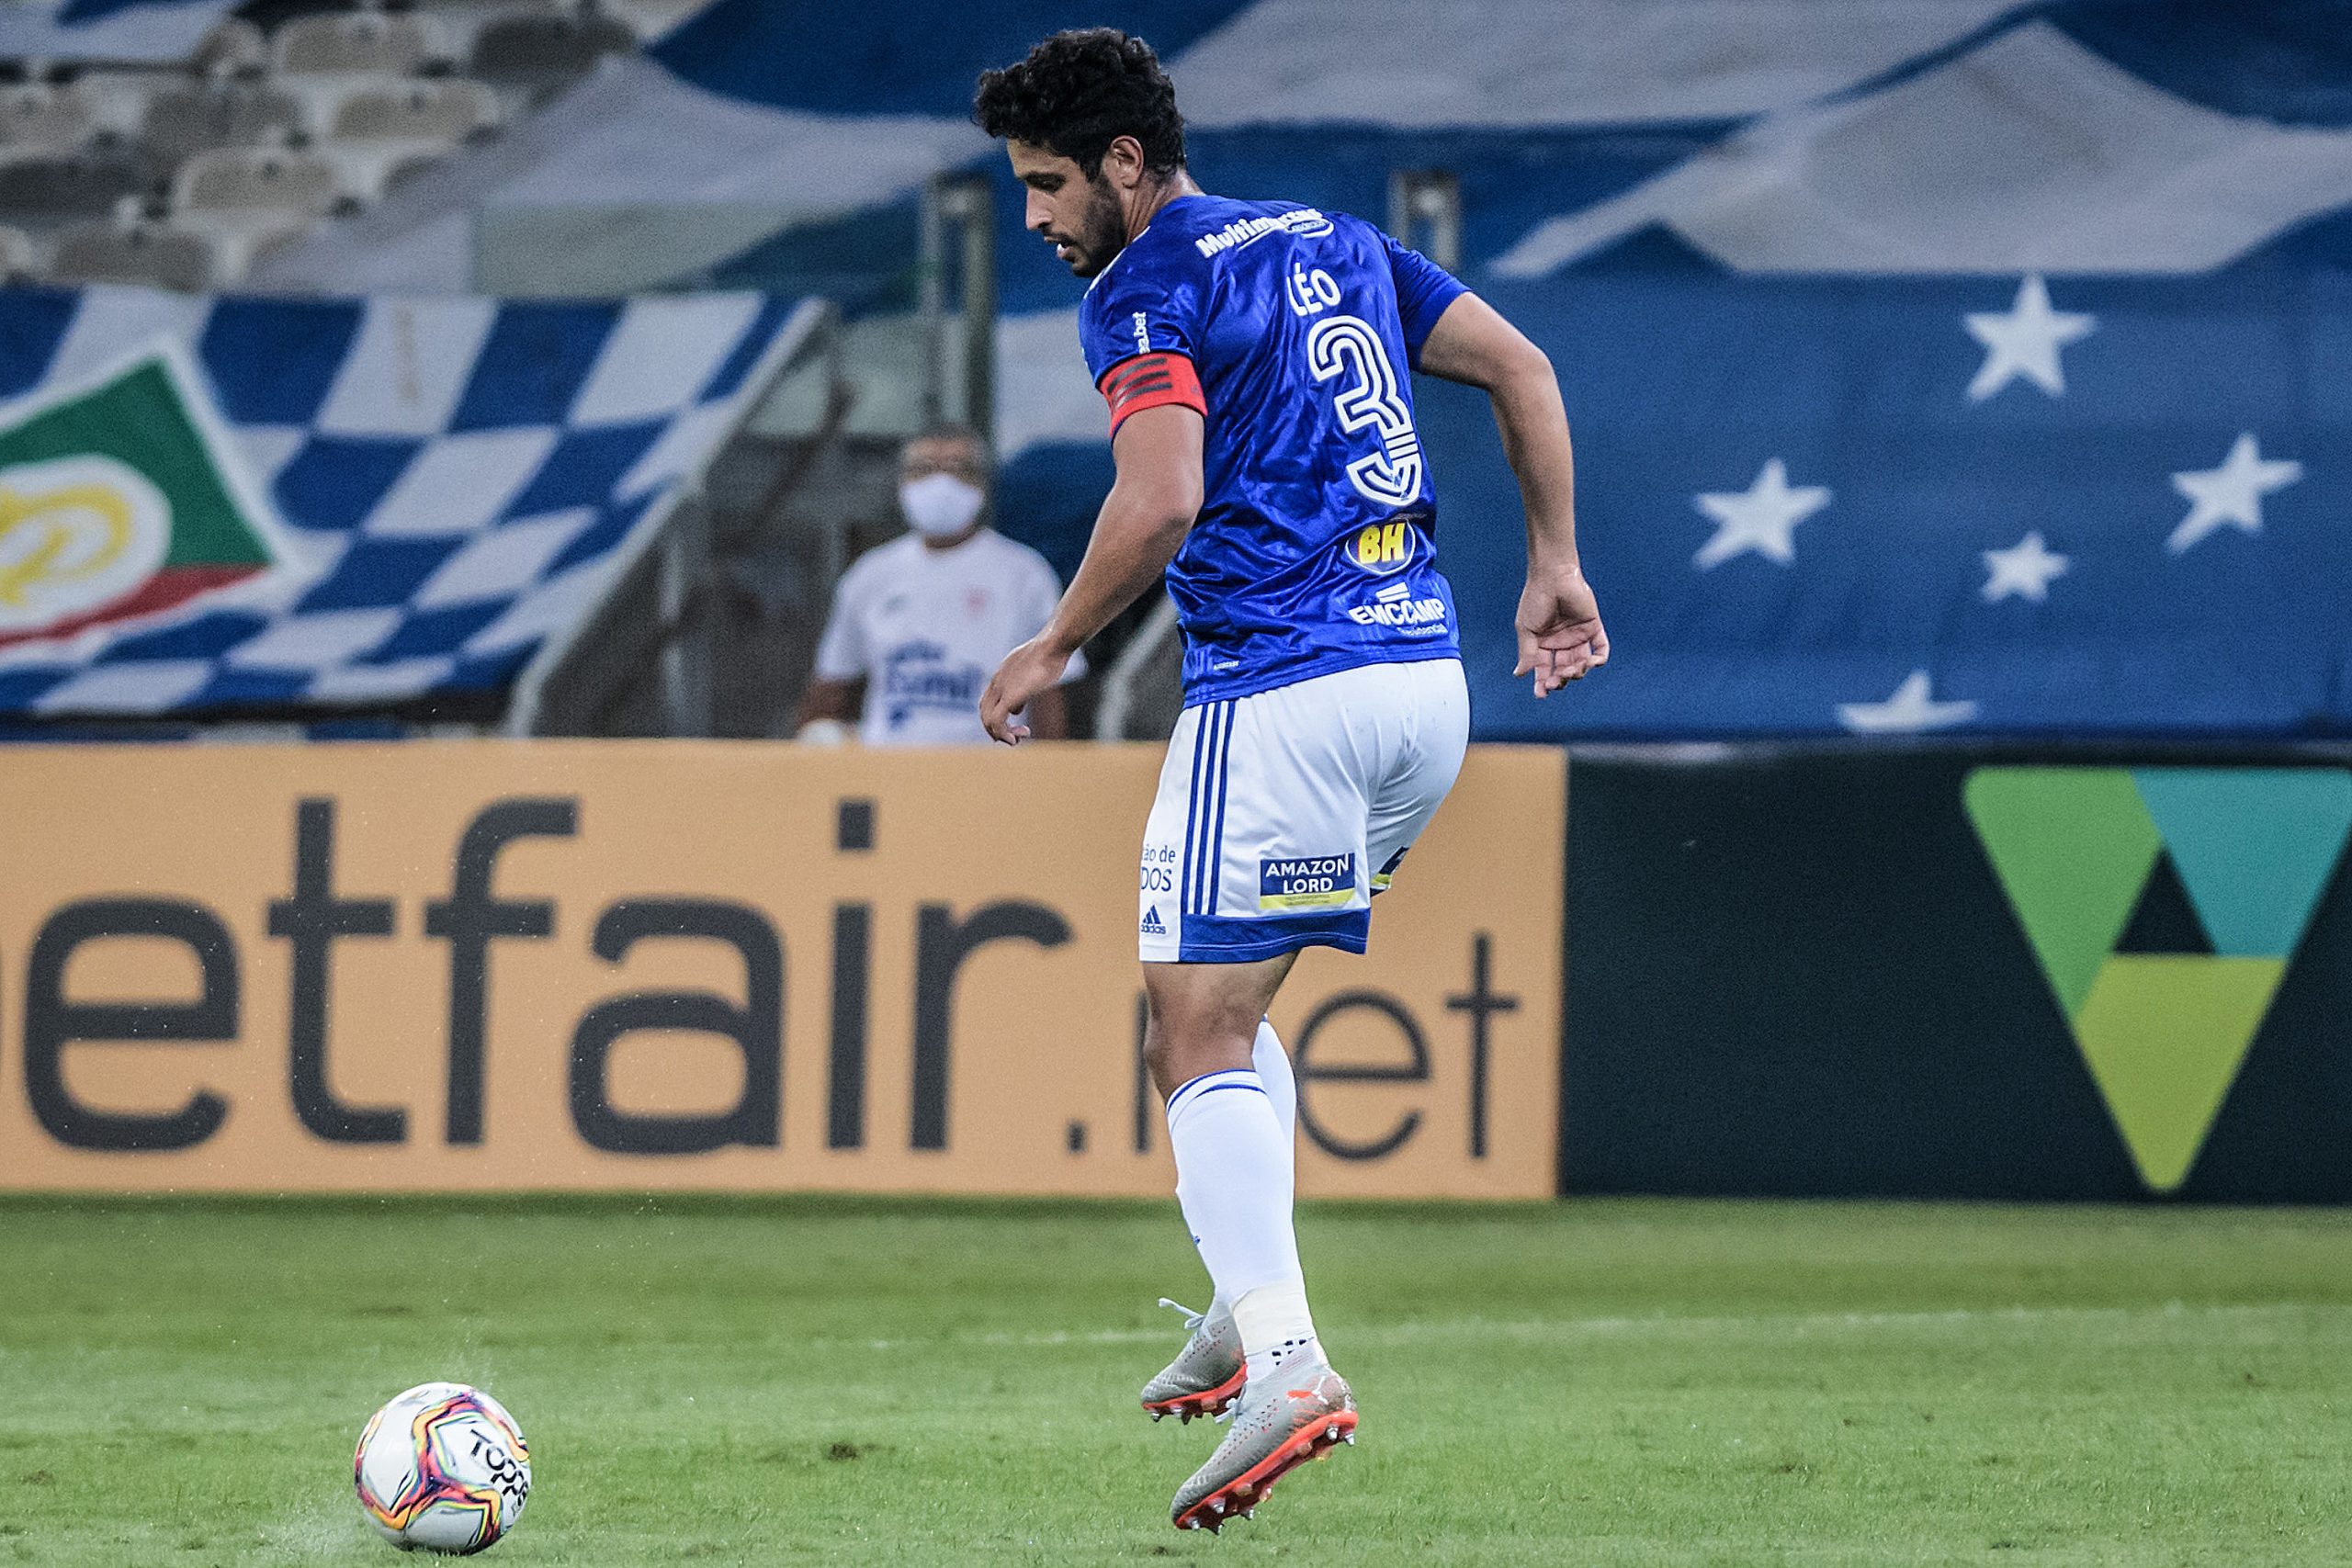 Zagueiro Léo relembra permanência no Cruzeiro após rebaixamento: 'Hombridade'